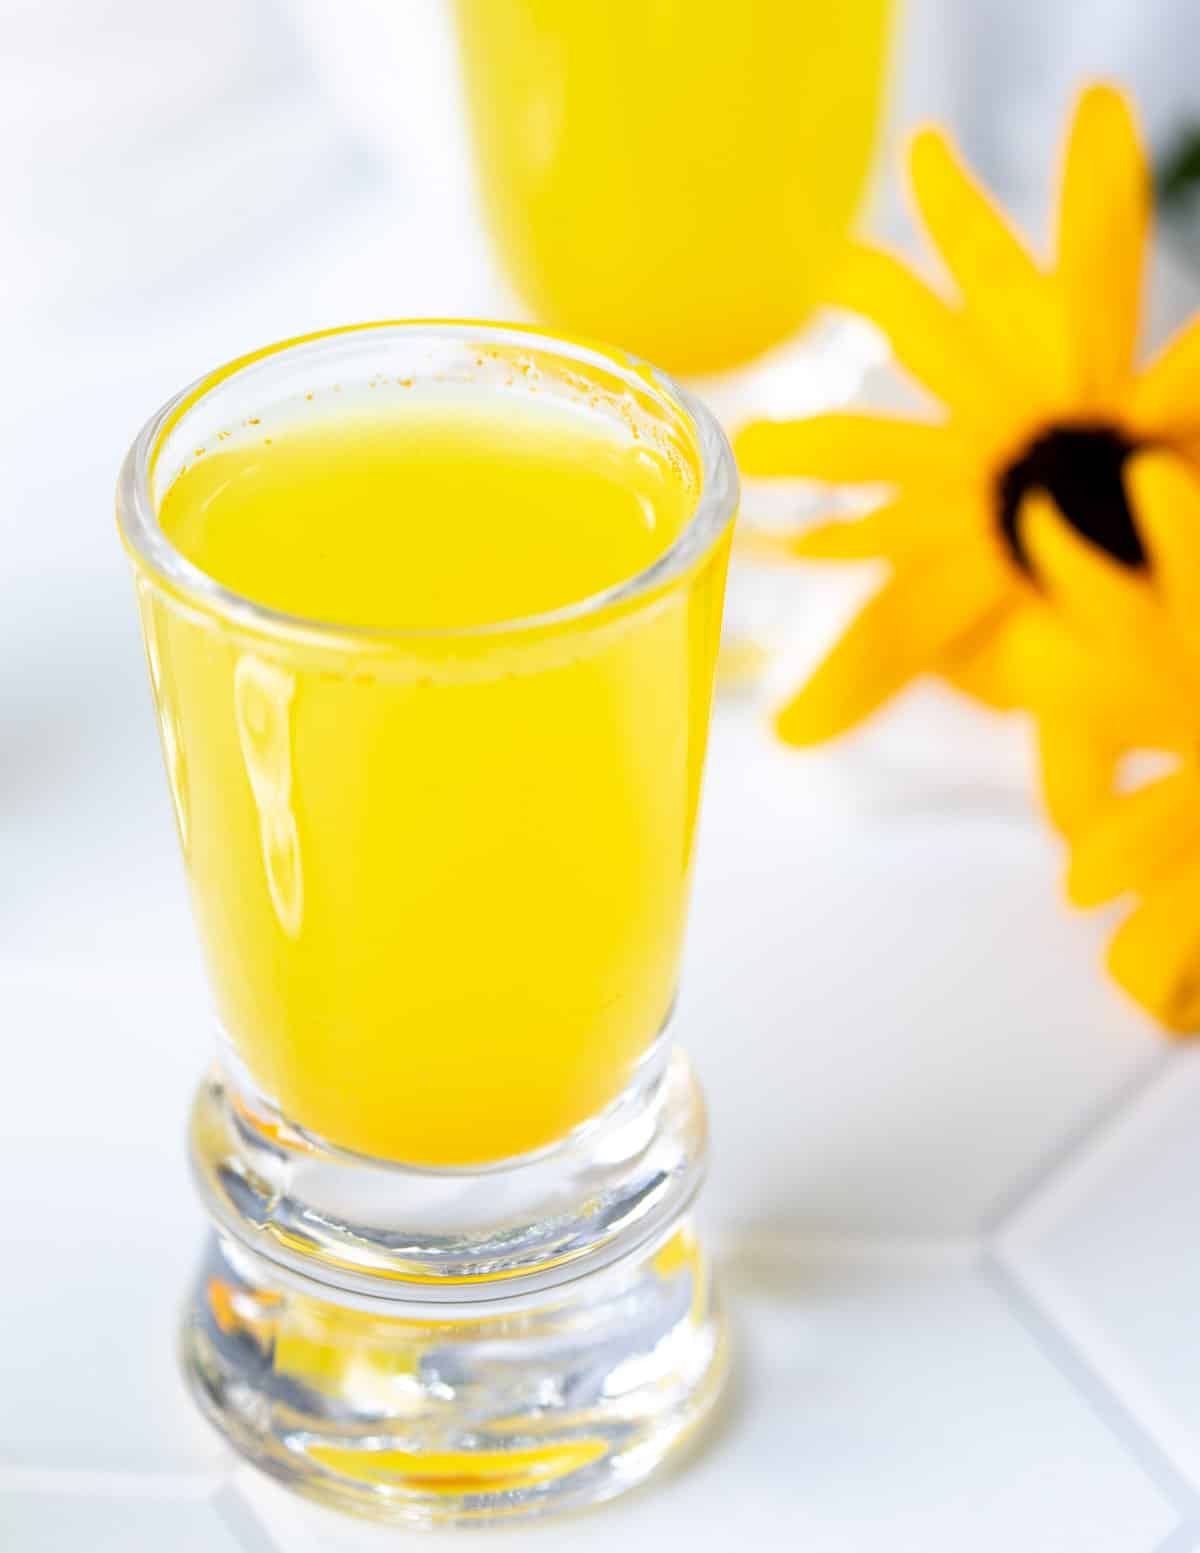 Lemon ginger turmeric shot in shot glass.
